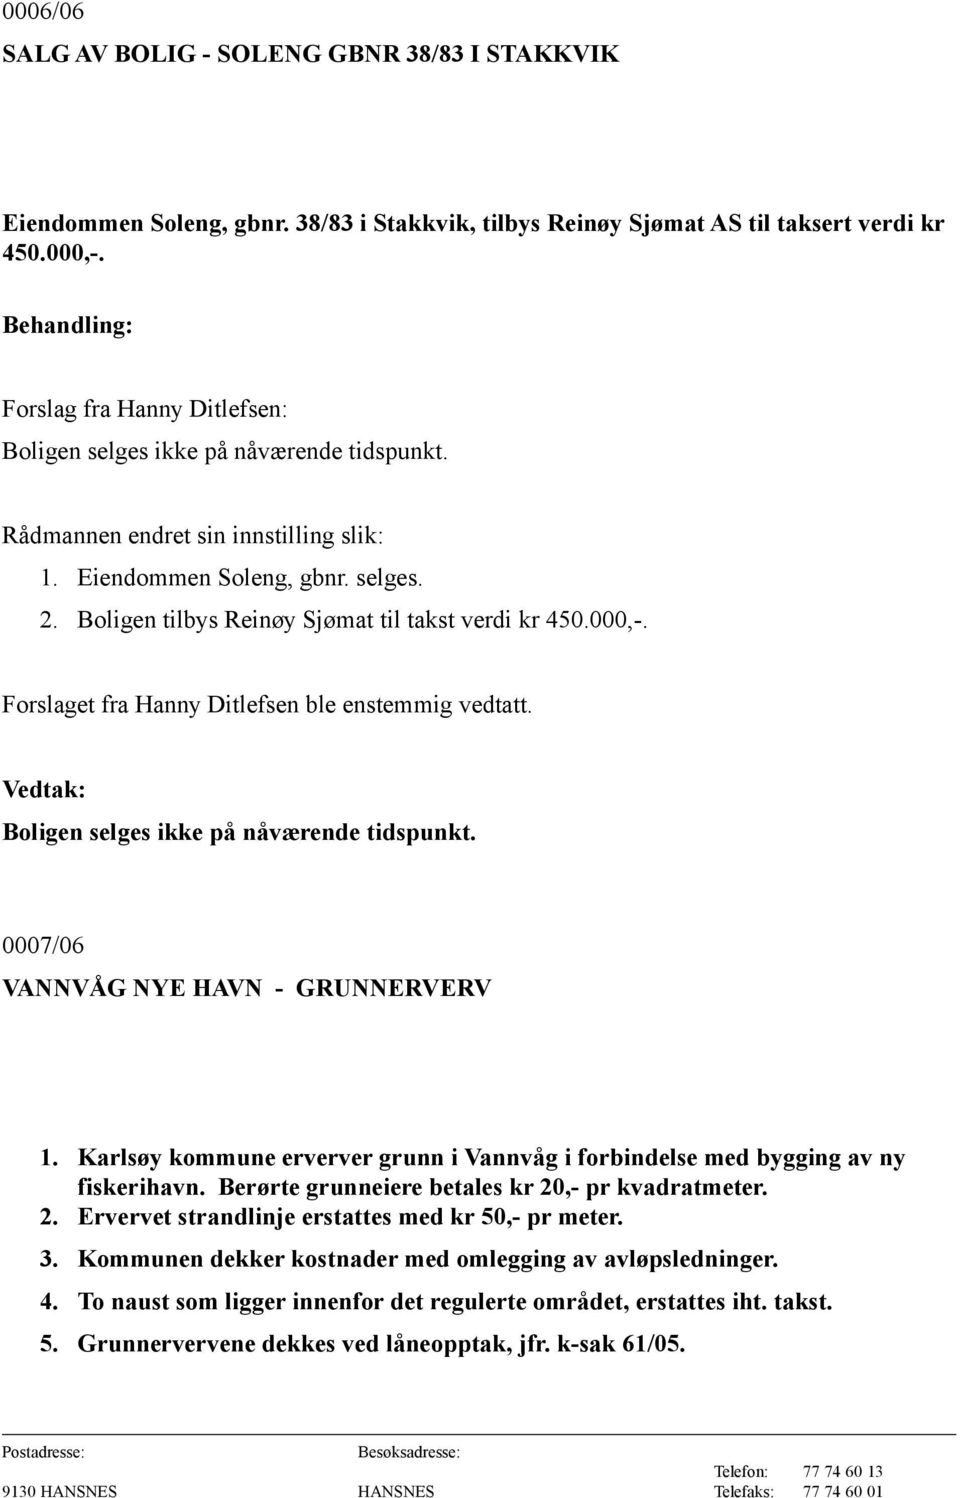 Boligen tilbys Reinøy Sjømat til takst verdi kr 450.000,-. Forslaget fra Hanny Ditlefsen ble enstemmig vedtatt. Boligen selges ikke på nåværende tidspunkt. 0007/06 VANNVÅG NYE HAVN - GRUNNERVERV 1.